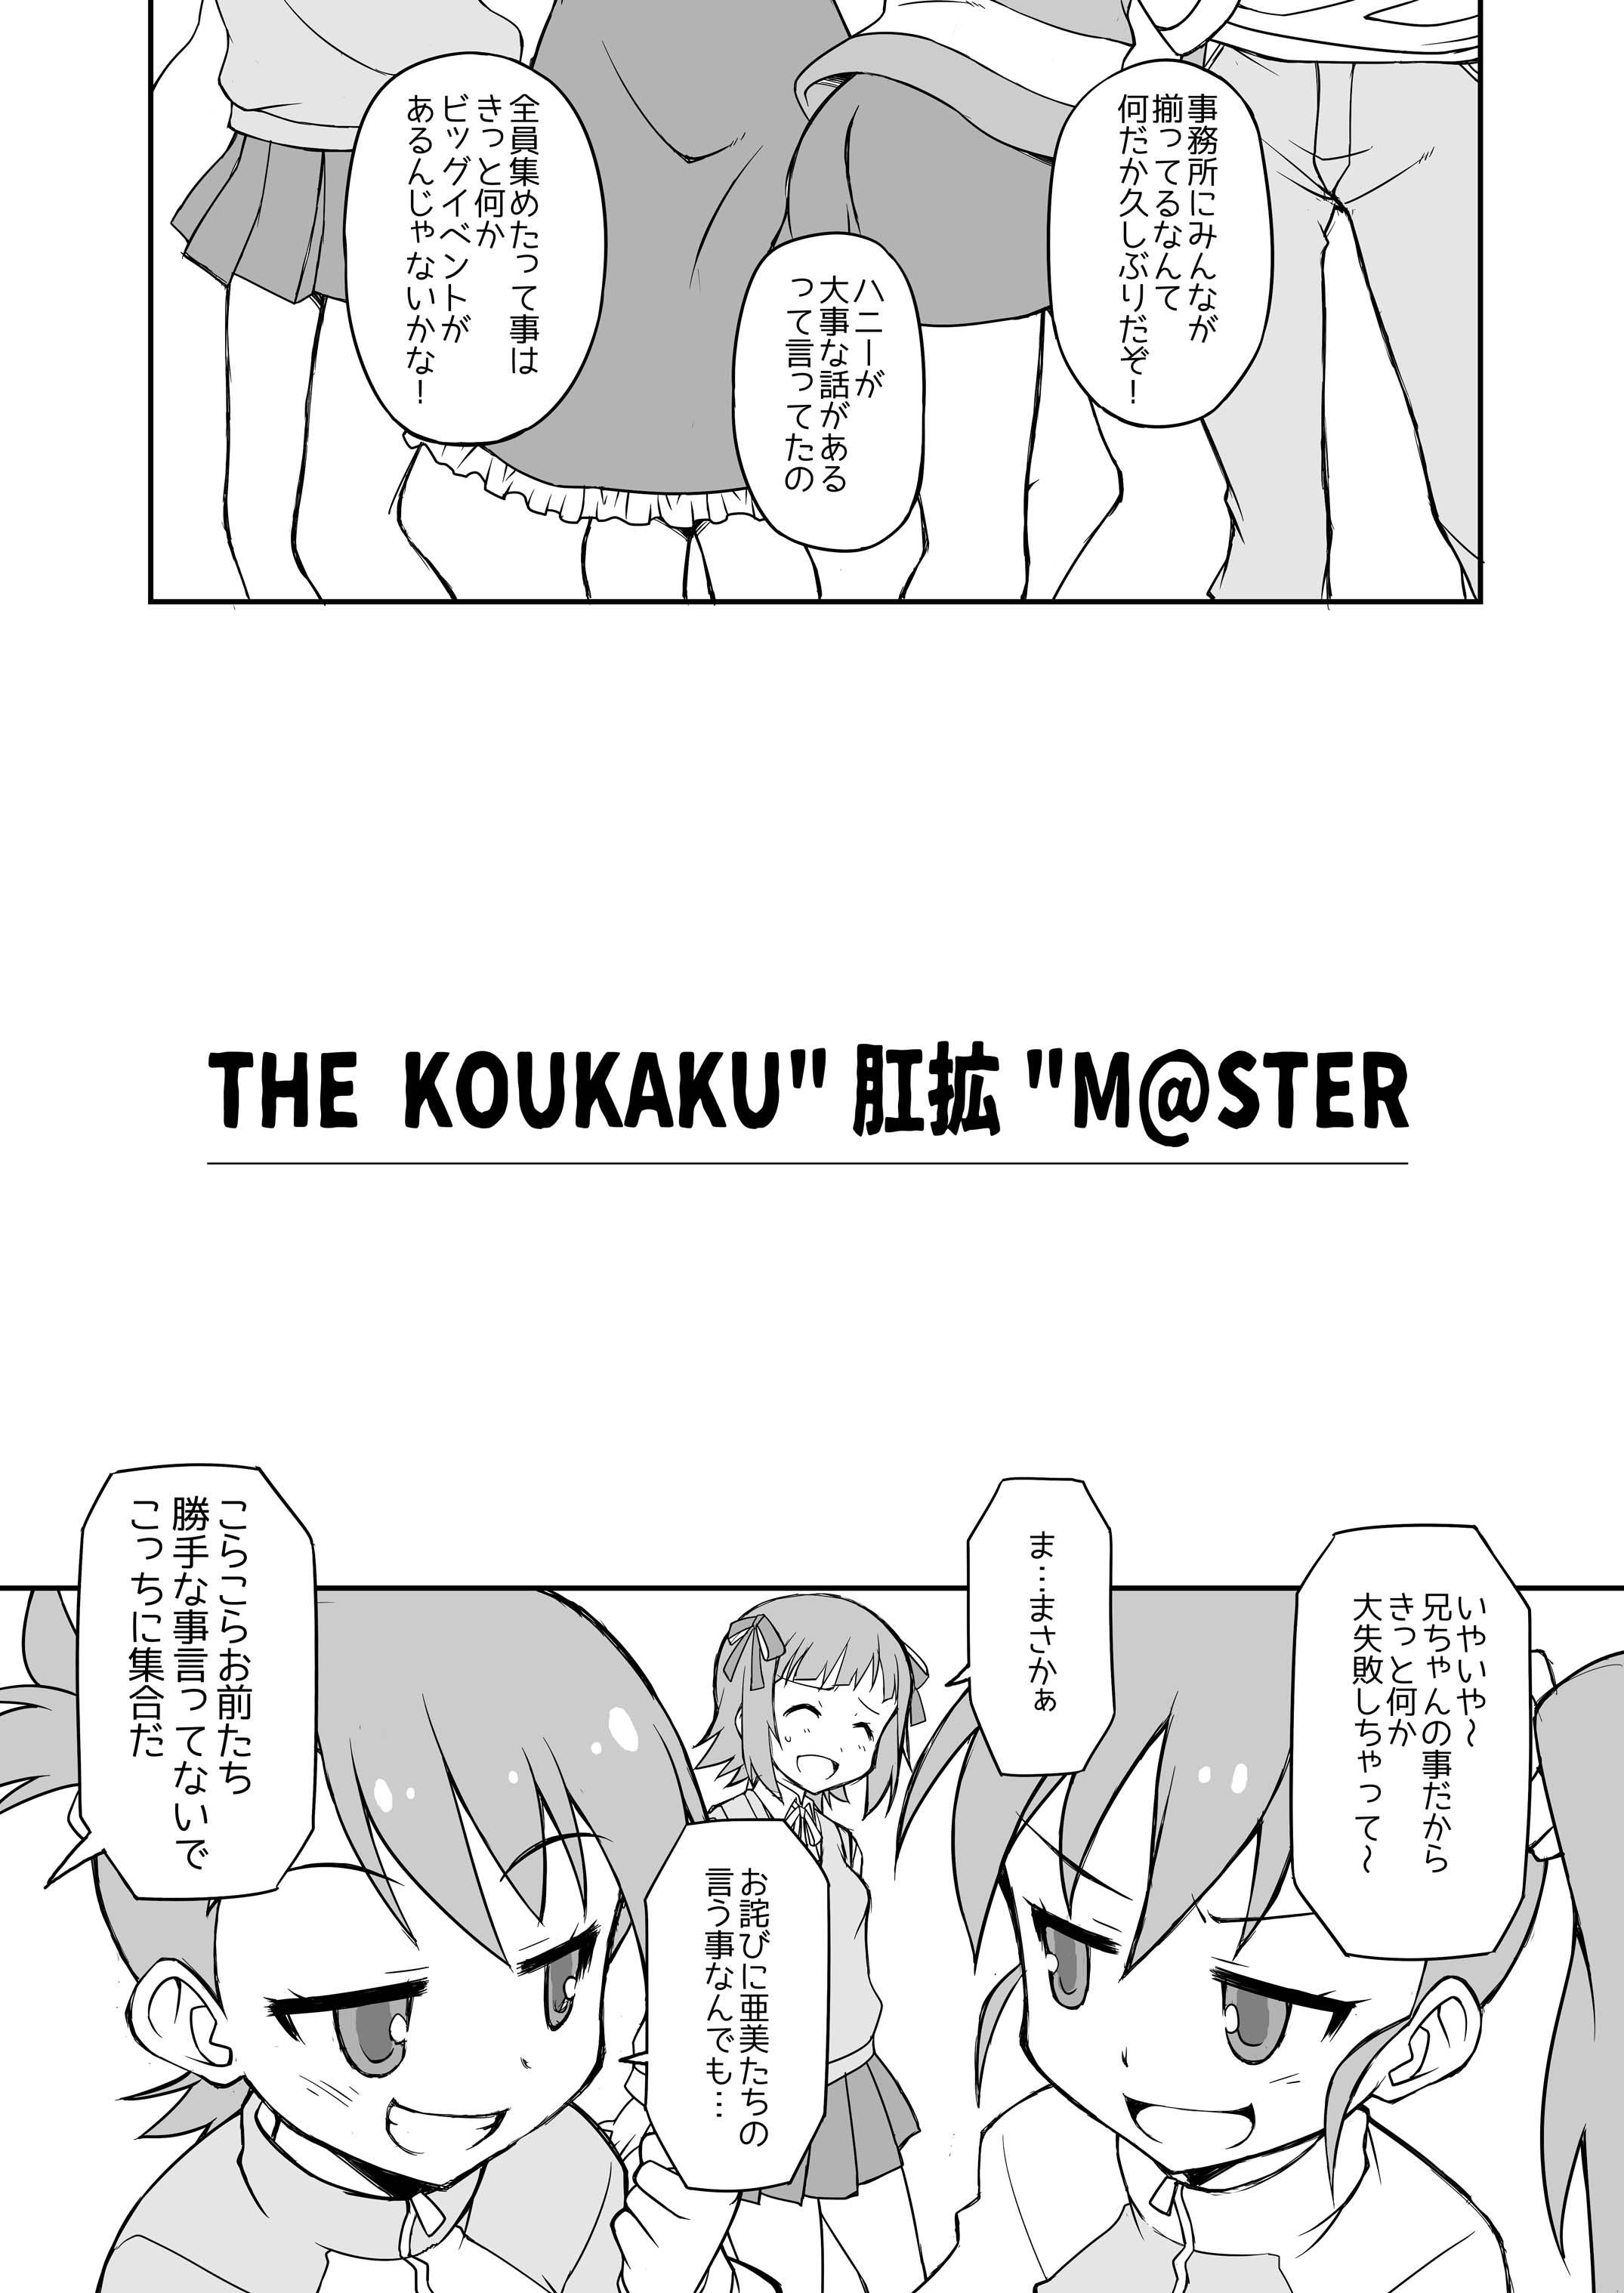 THE KOUKAKUM@STER 4